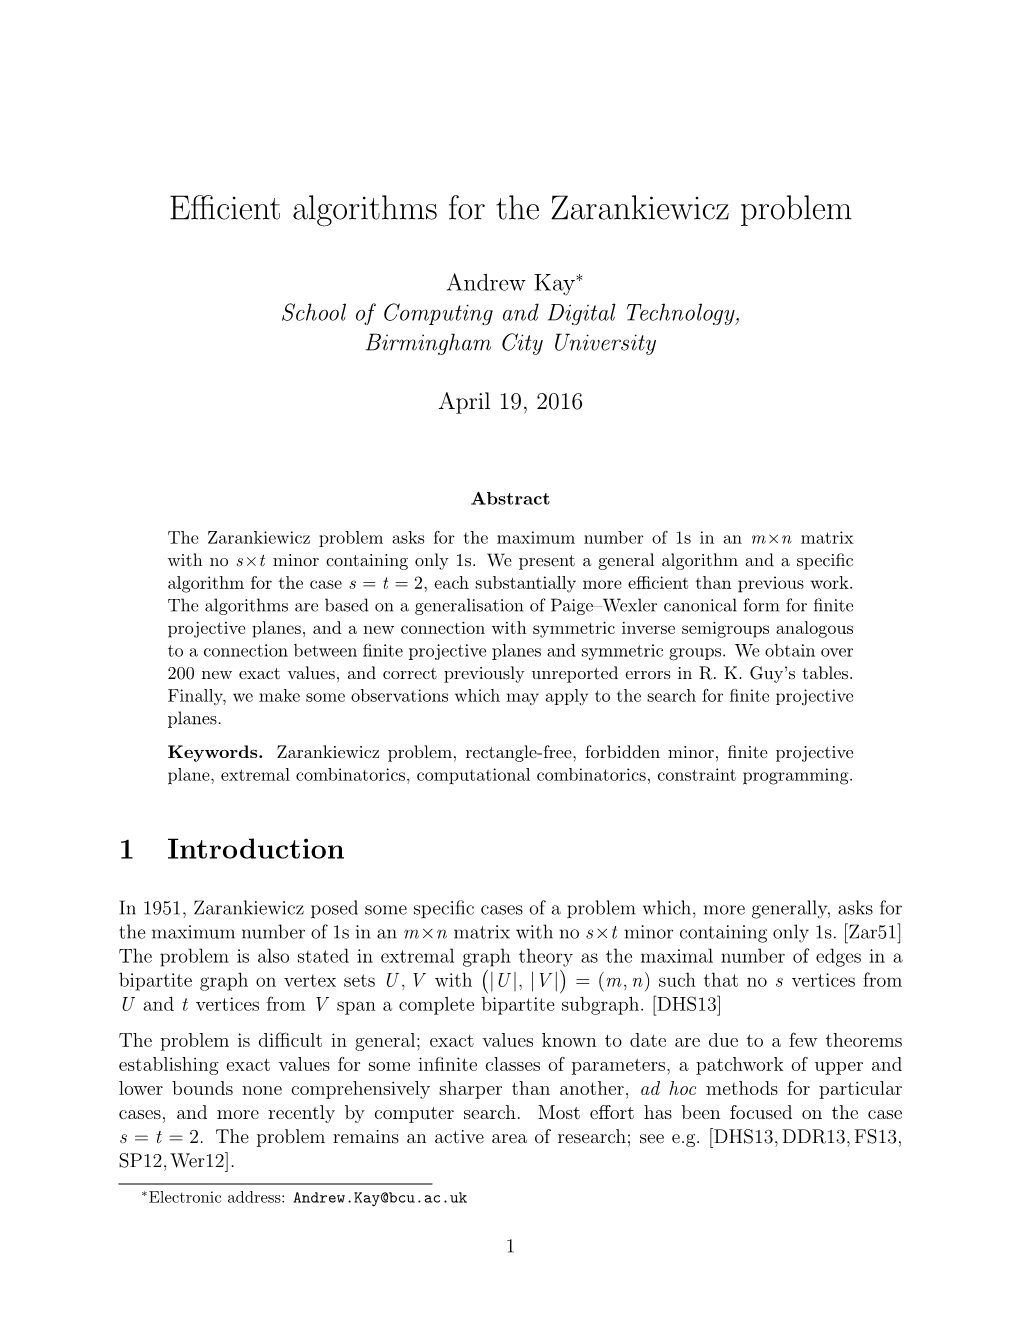 Efficient Algorithms for the Zarankiewicz Problem